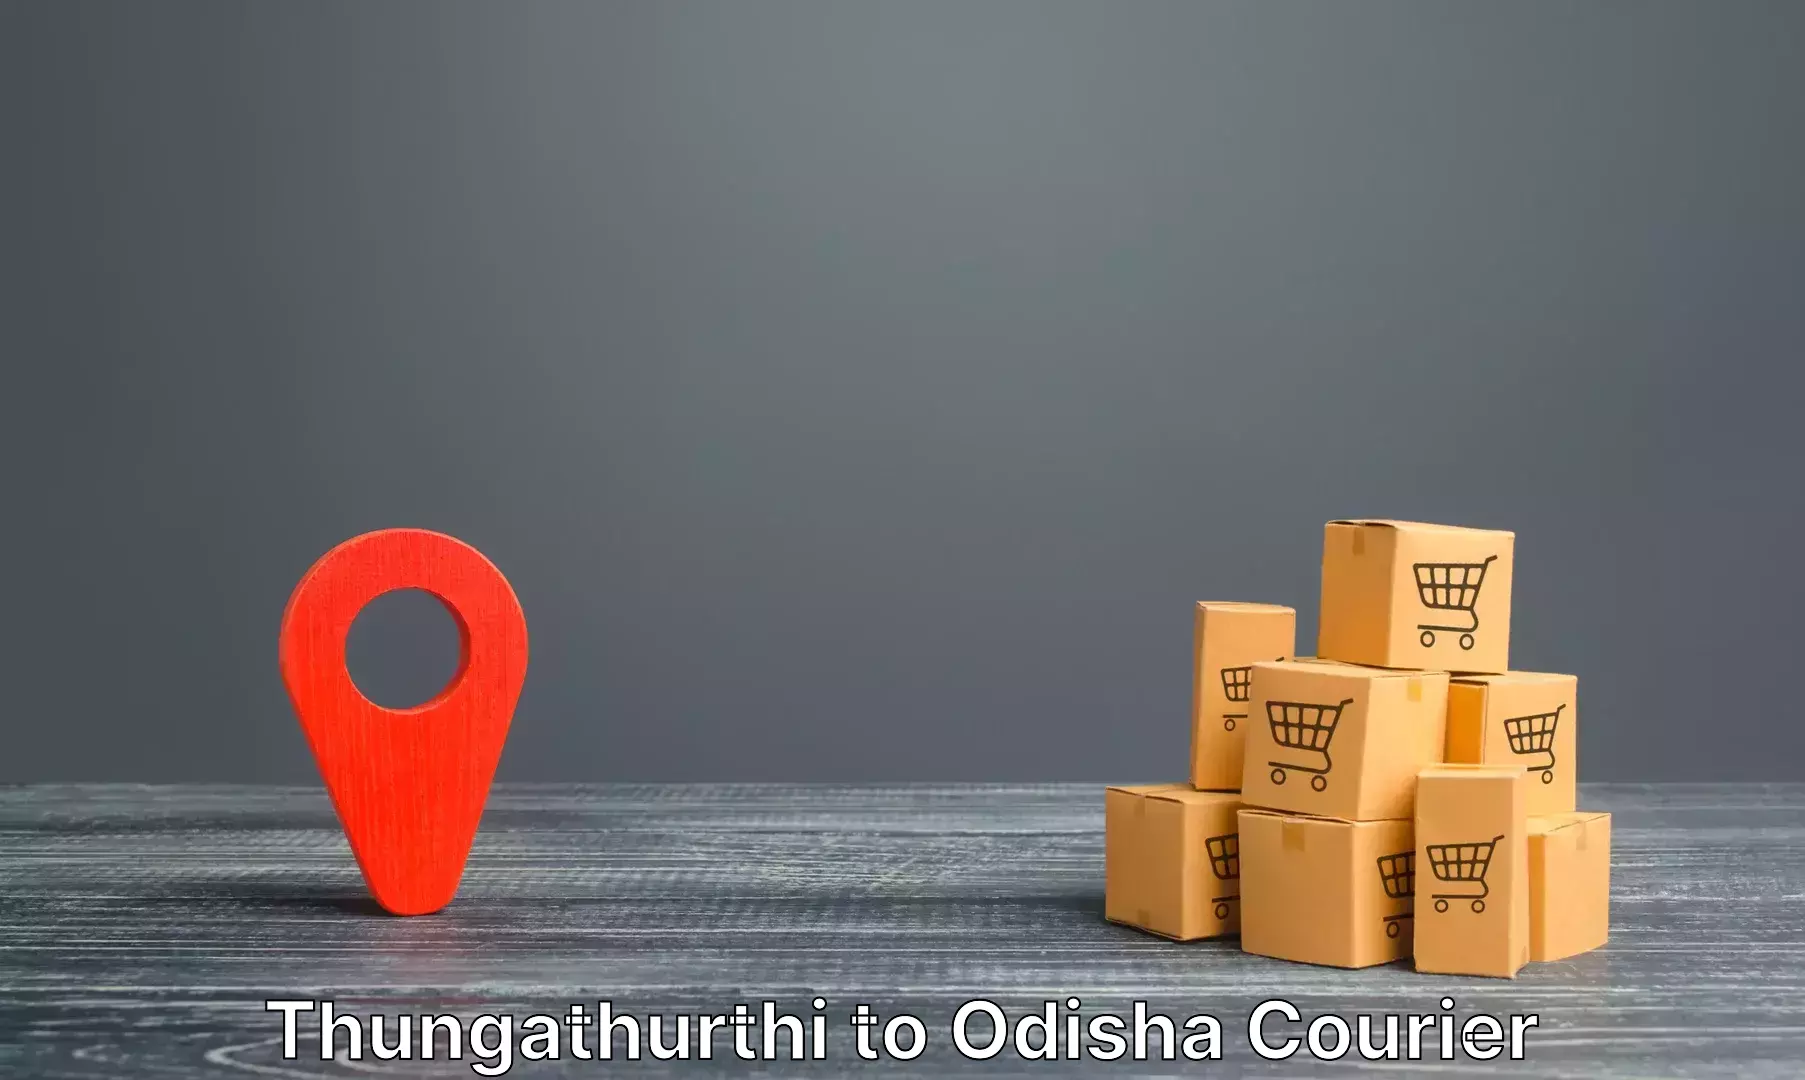 Luggage forwarding service Thungathurthi to Bhadrak